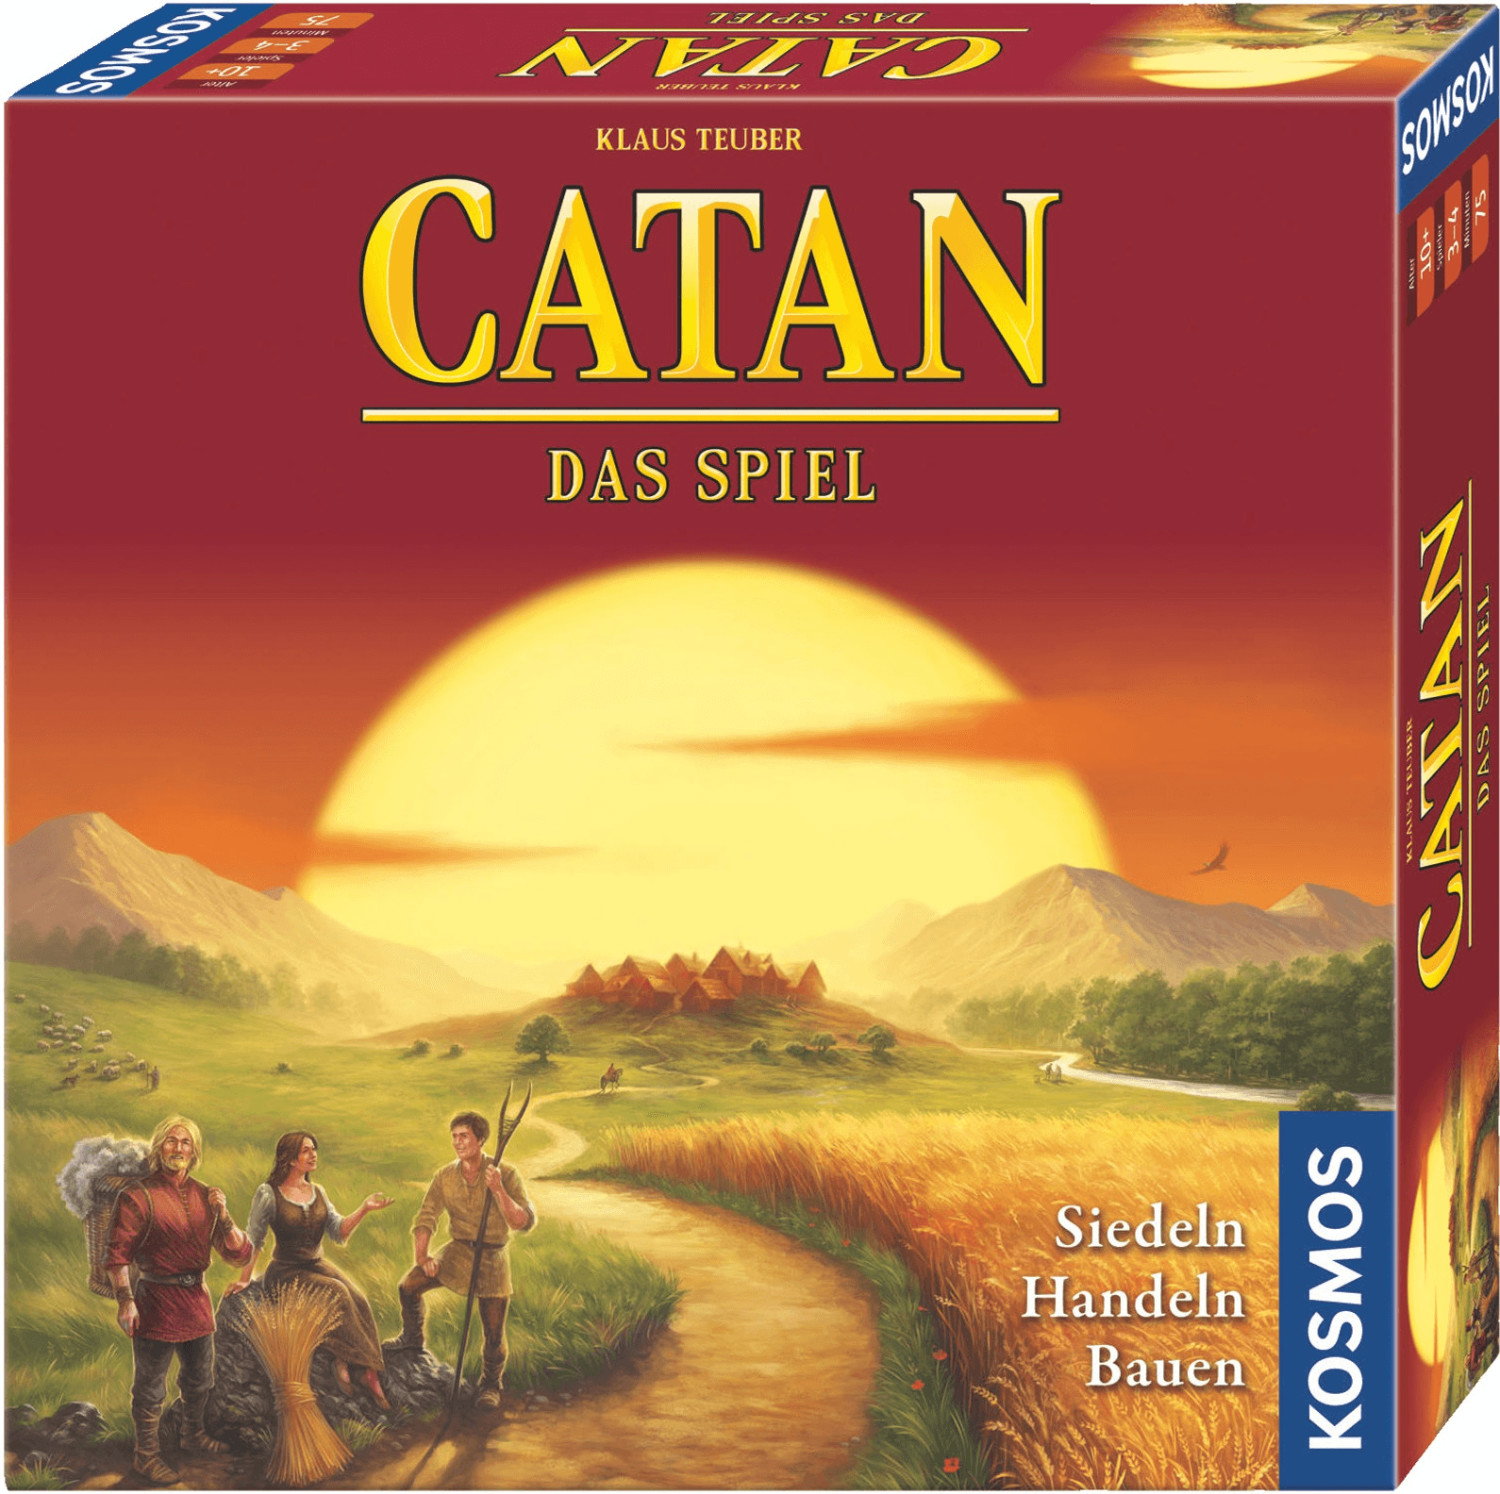 Catan - Das Spiel (693602)